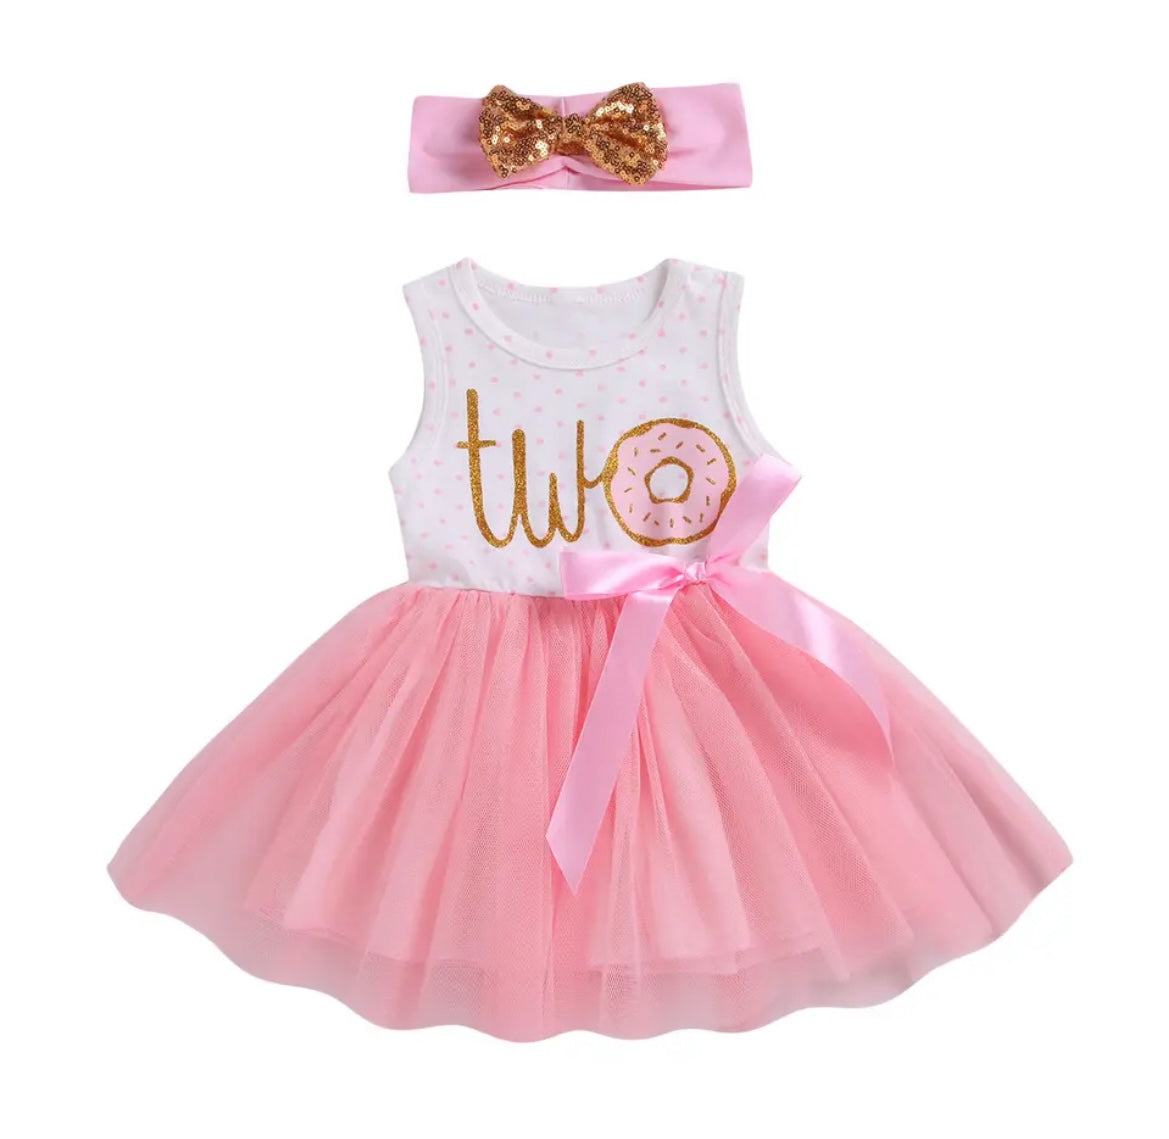 Baby Girl Donut & Polka Dot - Second Birthday Tutu Dress Outfit Baby Girl Donut & Polka Dot - Second Birthday Tutu Dress Outfit.